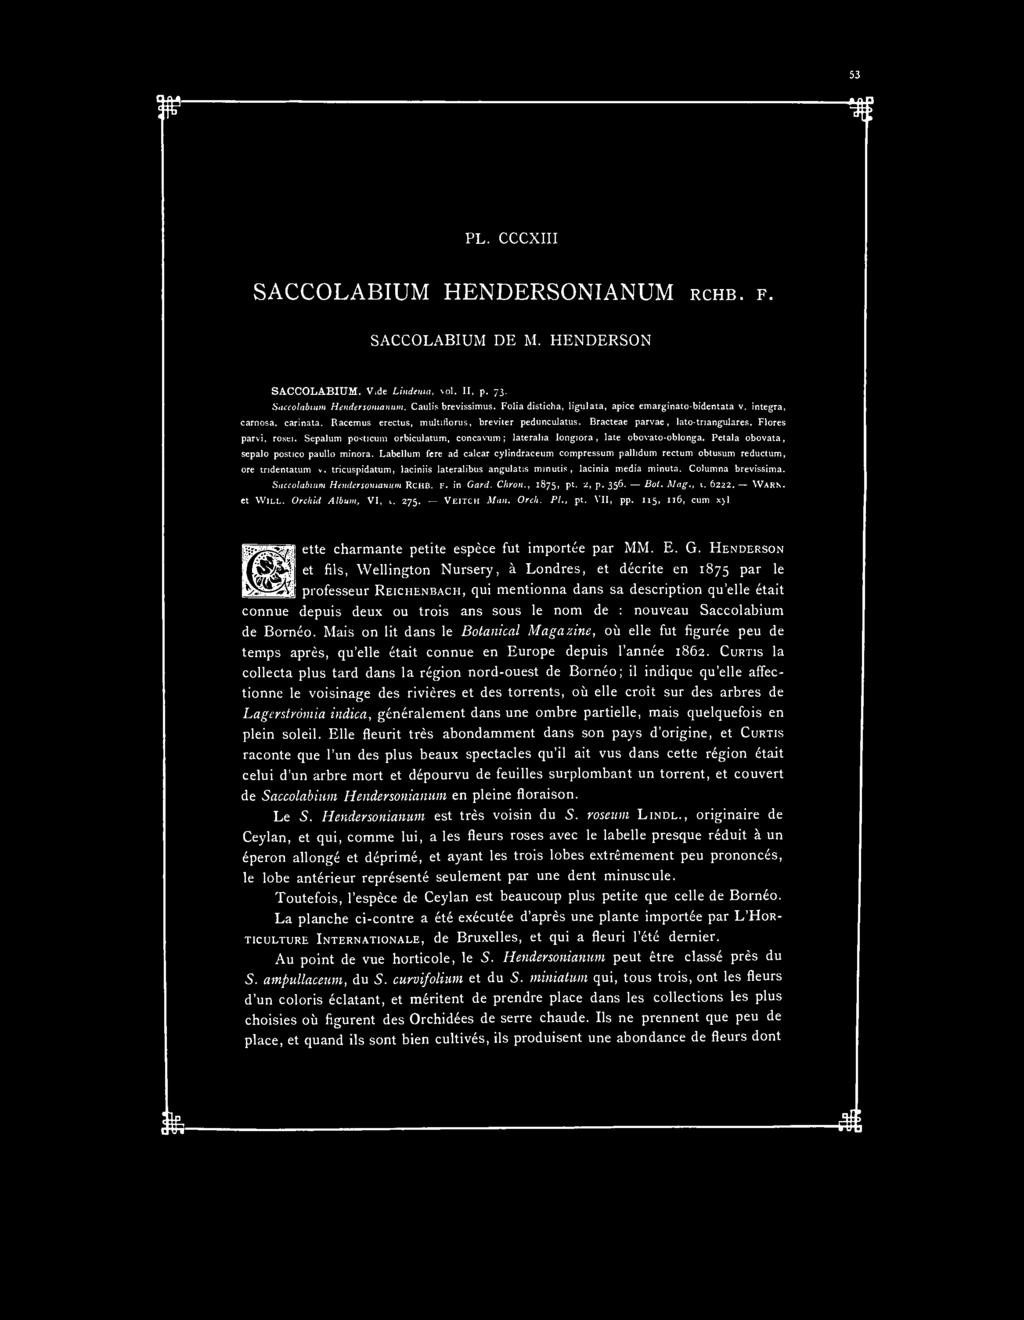 PL. CCCXIII SACCOLABIUM HENDERSONIANUM RCHB. F. SACCOLABIUM DE M. HENDERSON SACCOLABIUM. Vide Lindenia, \ol. II, p, 73. Saccolabium Hendersonianum. Caulis brevissimus.